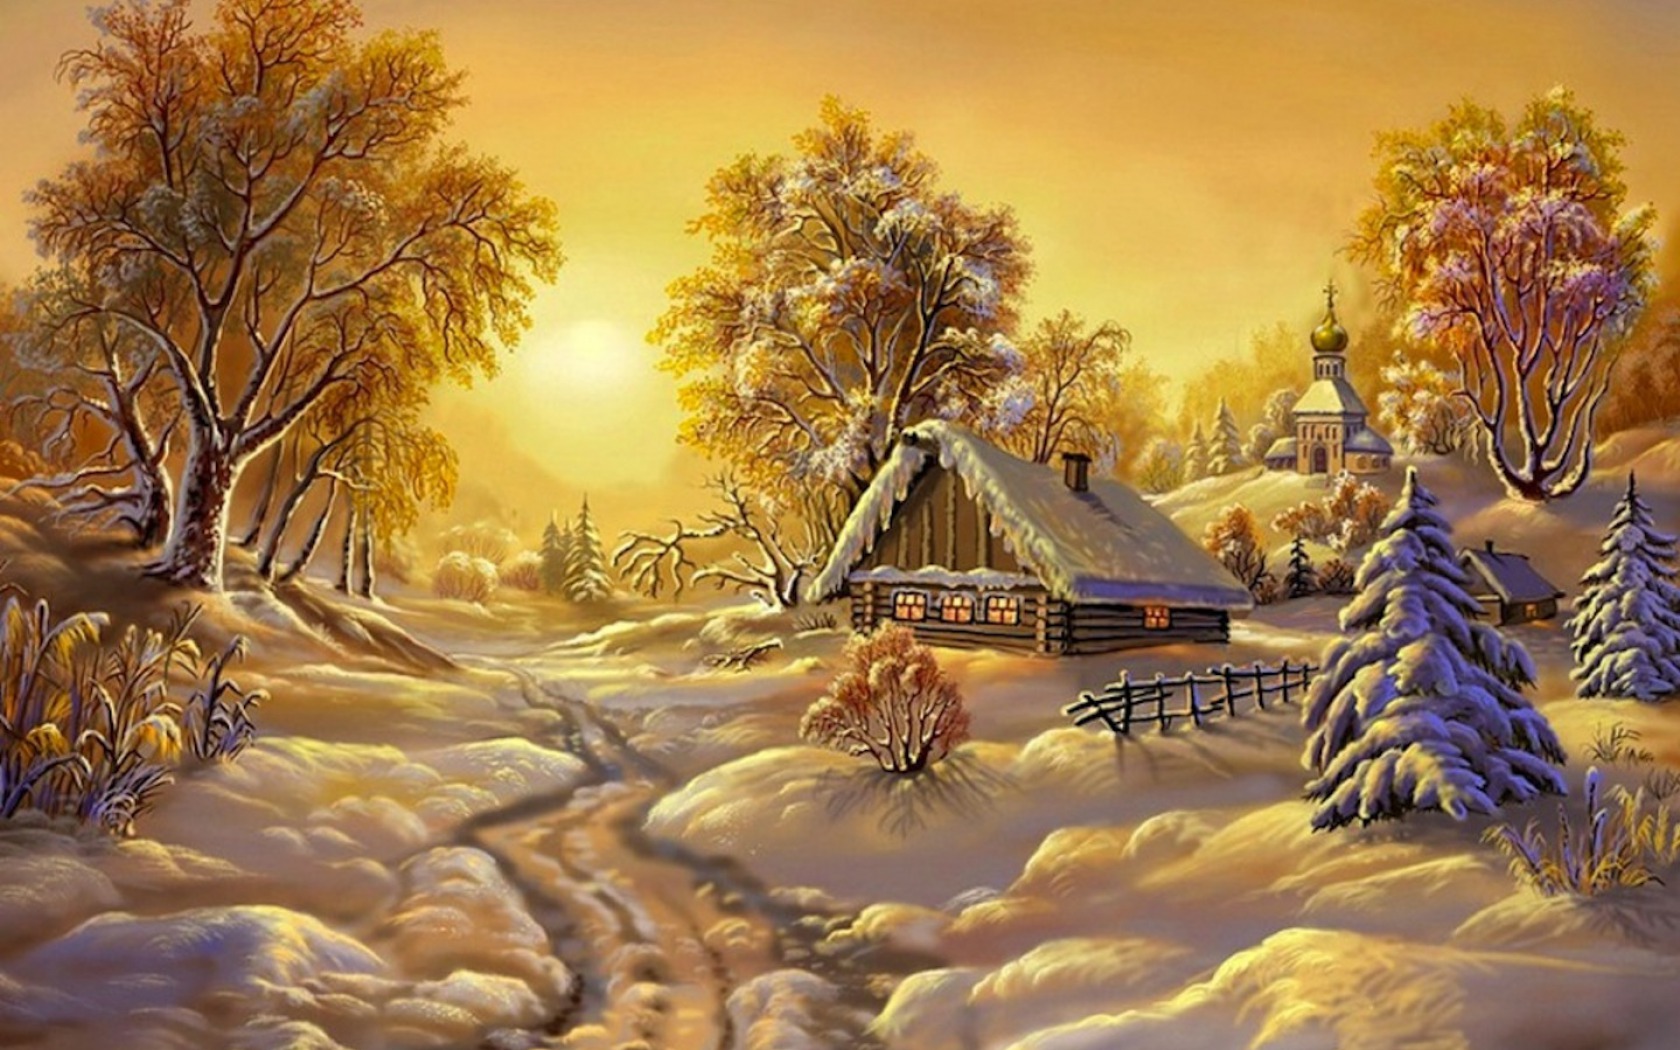 Скачать обои бесплатно Зима, Снег, Дерево, Дом, Картина, Художественные картинка на рабочий стол ПК